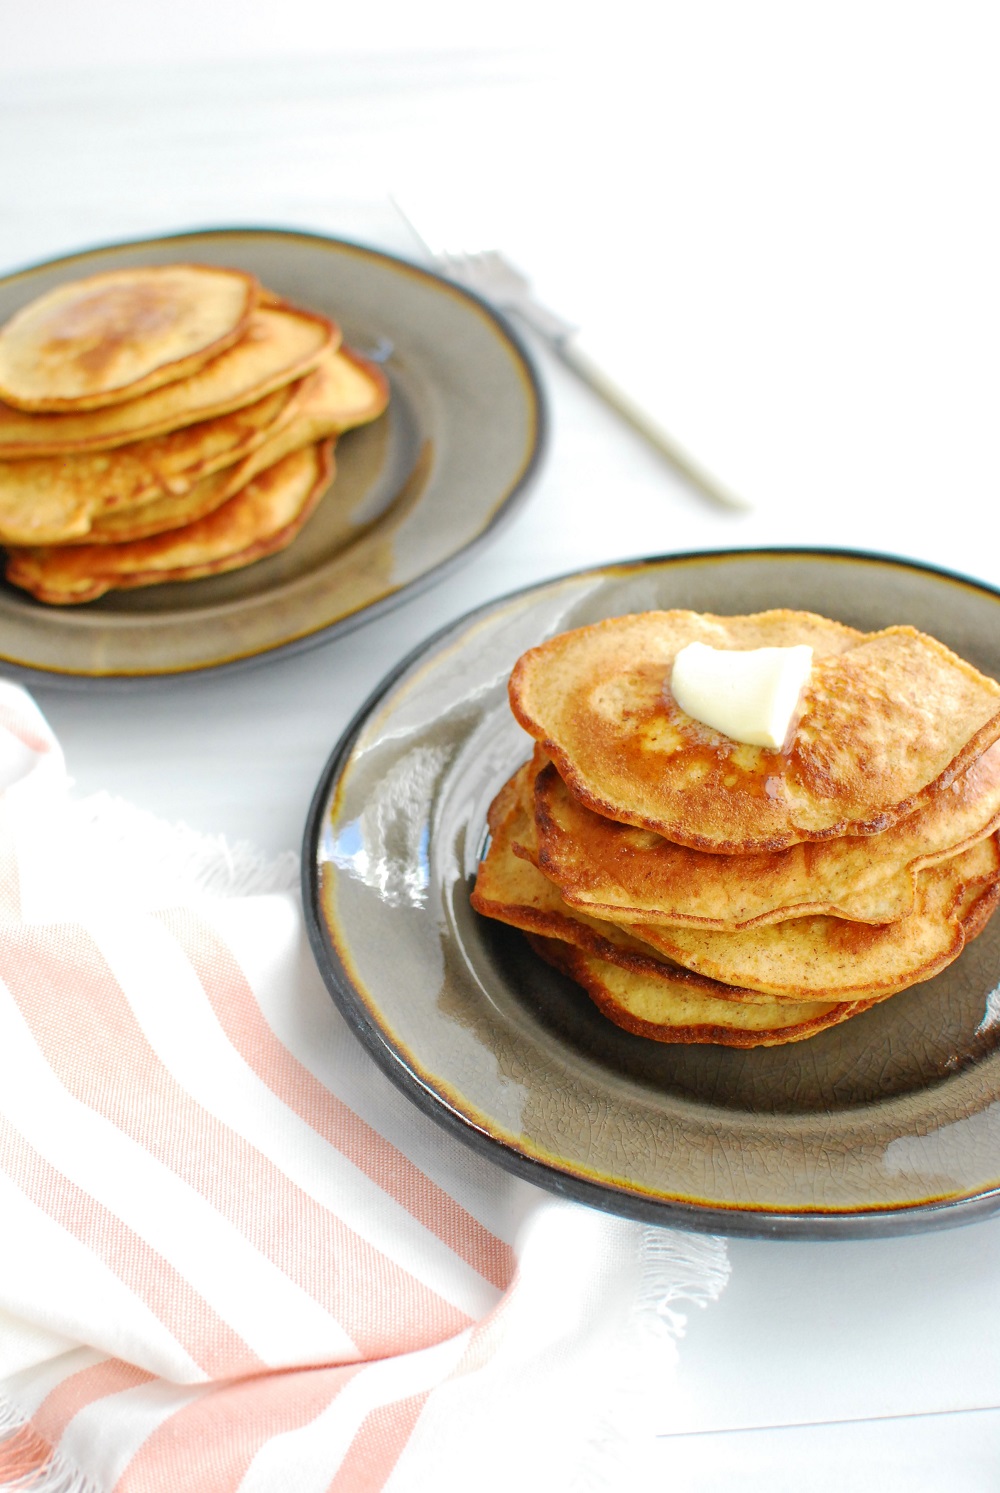 Insanely delicious keto pancakes